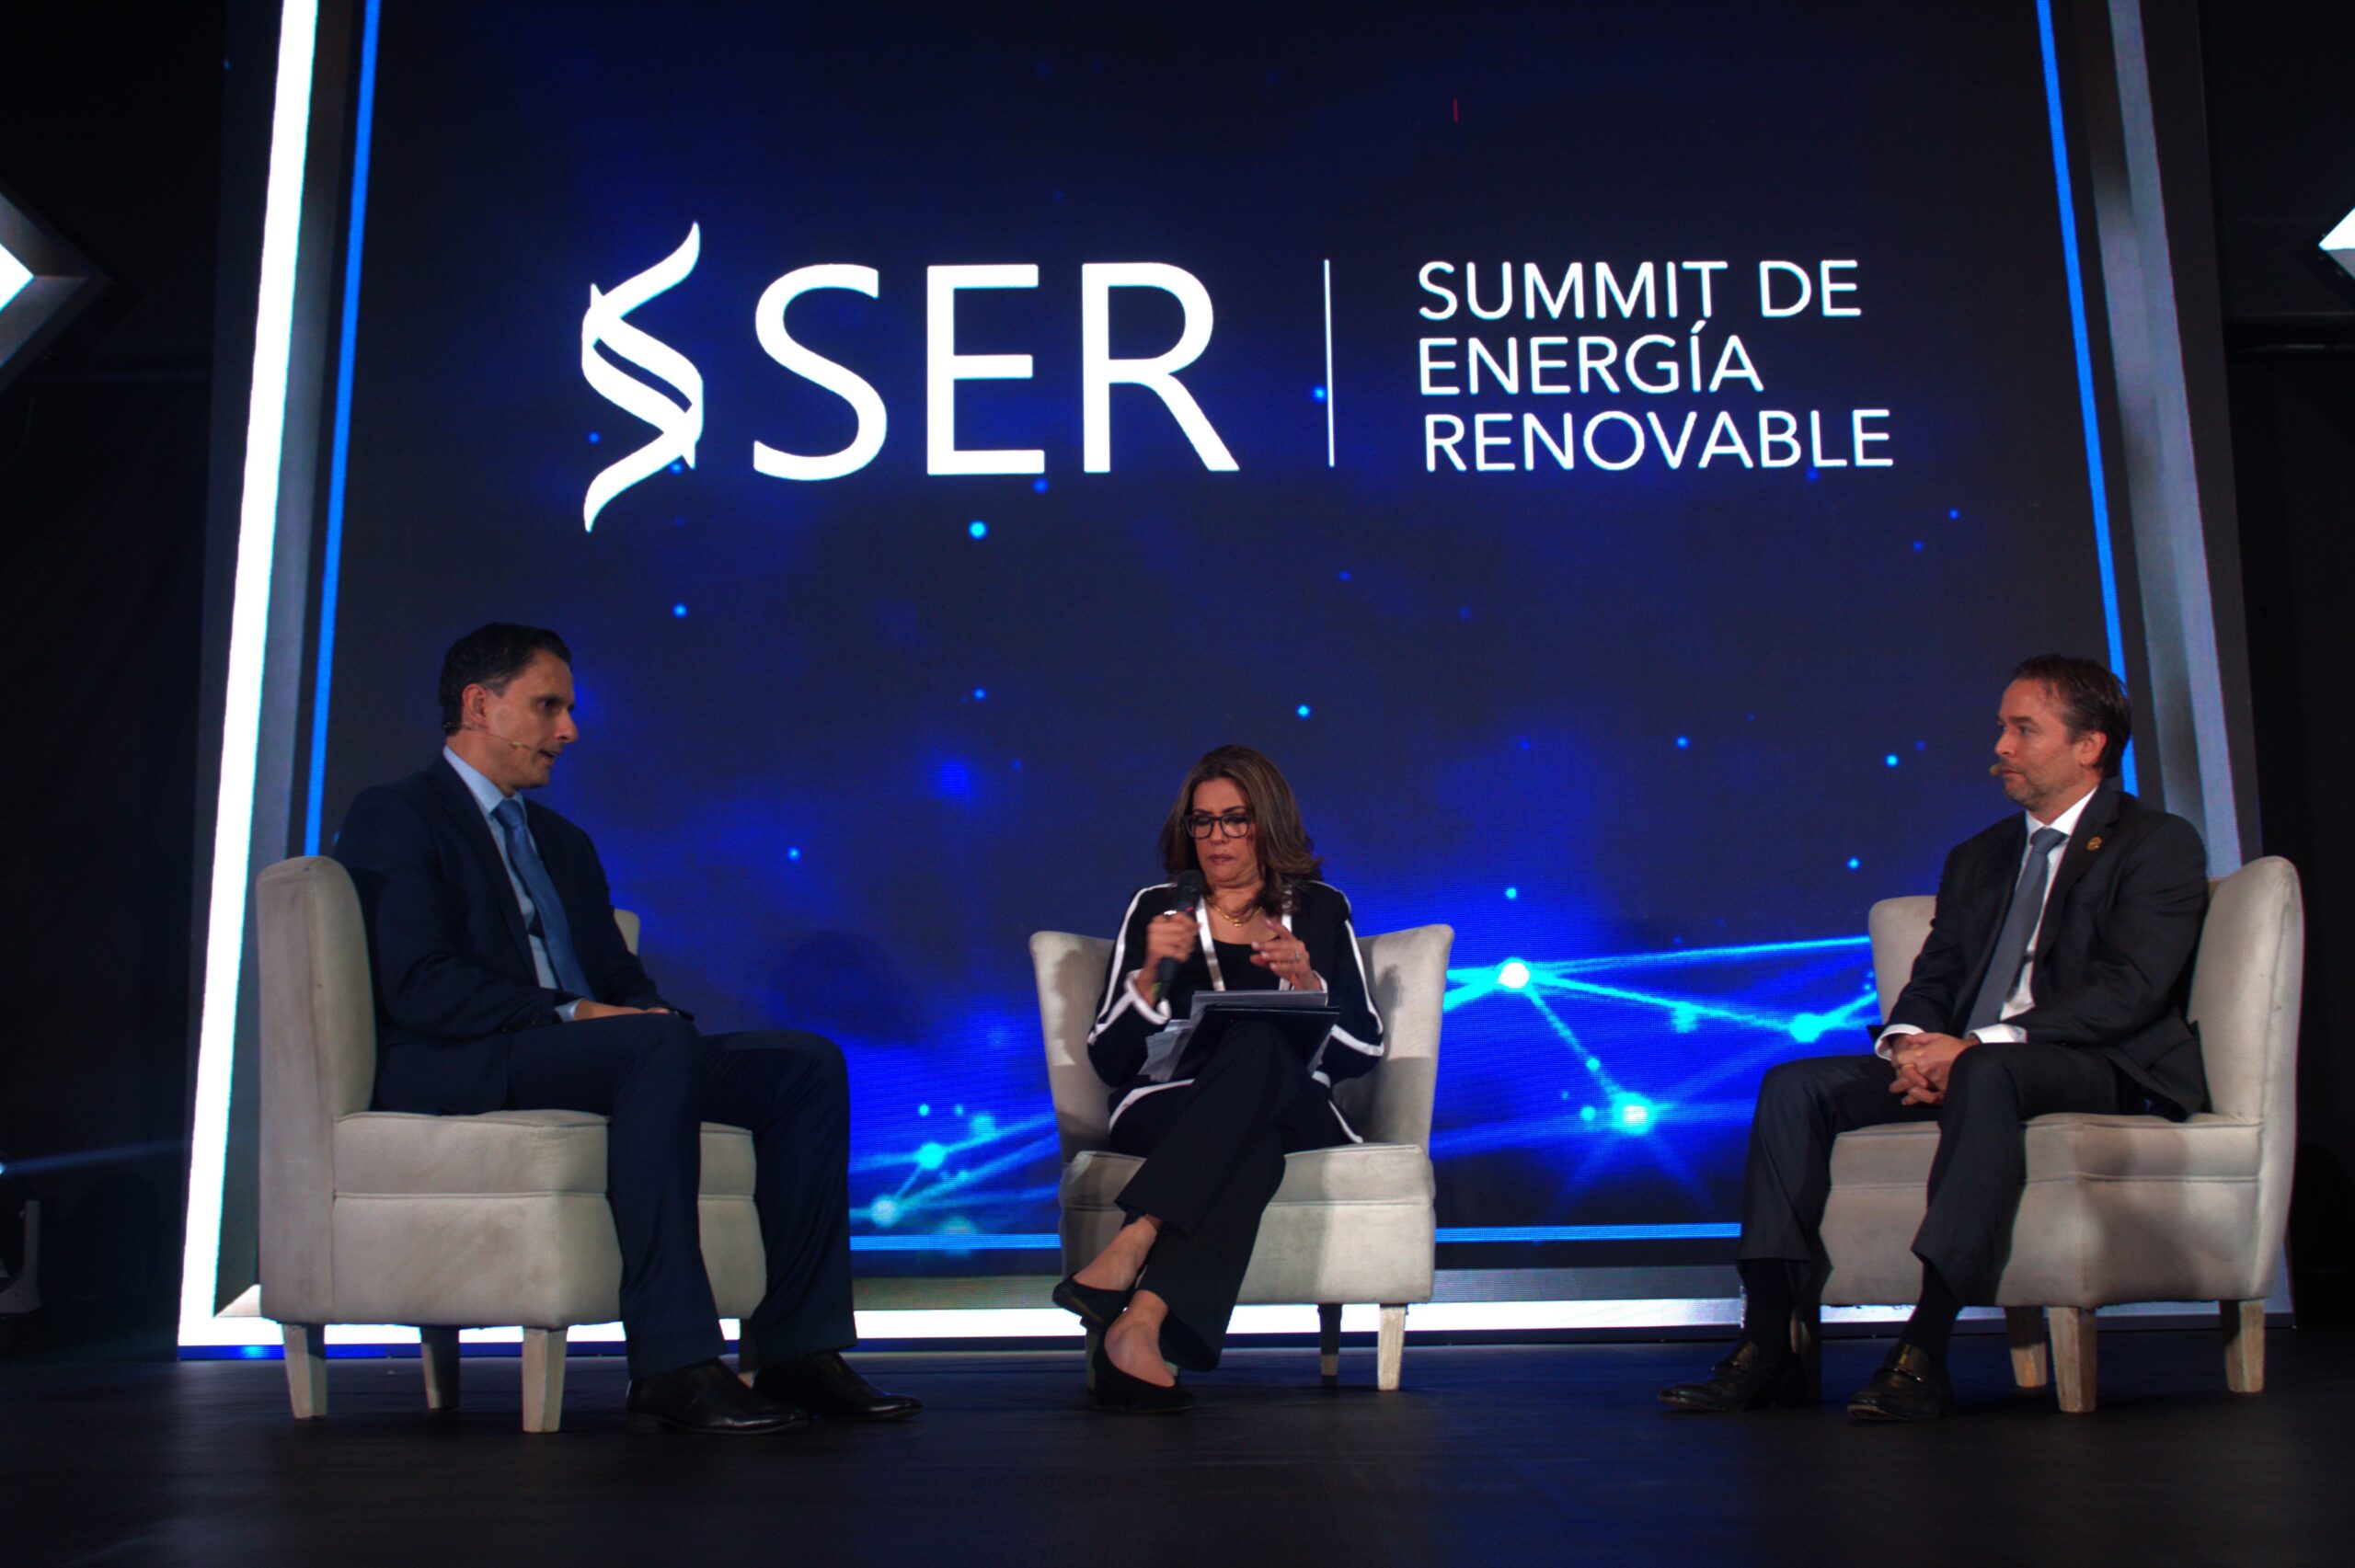 AGER el primer Summit de Energía Renovable –SER- marca unhito en el sector energético en la región.